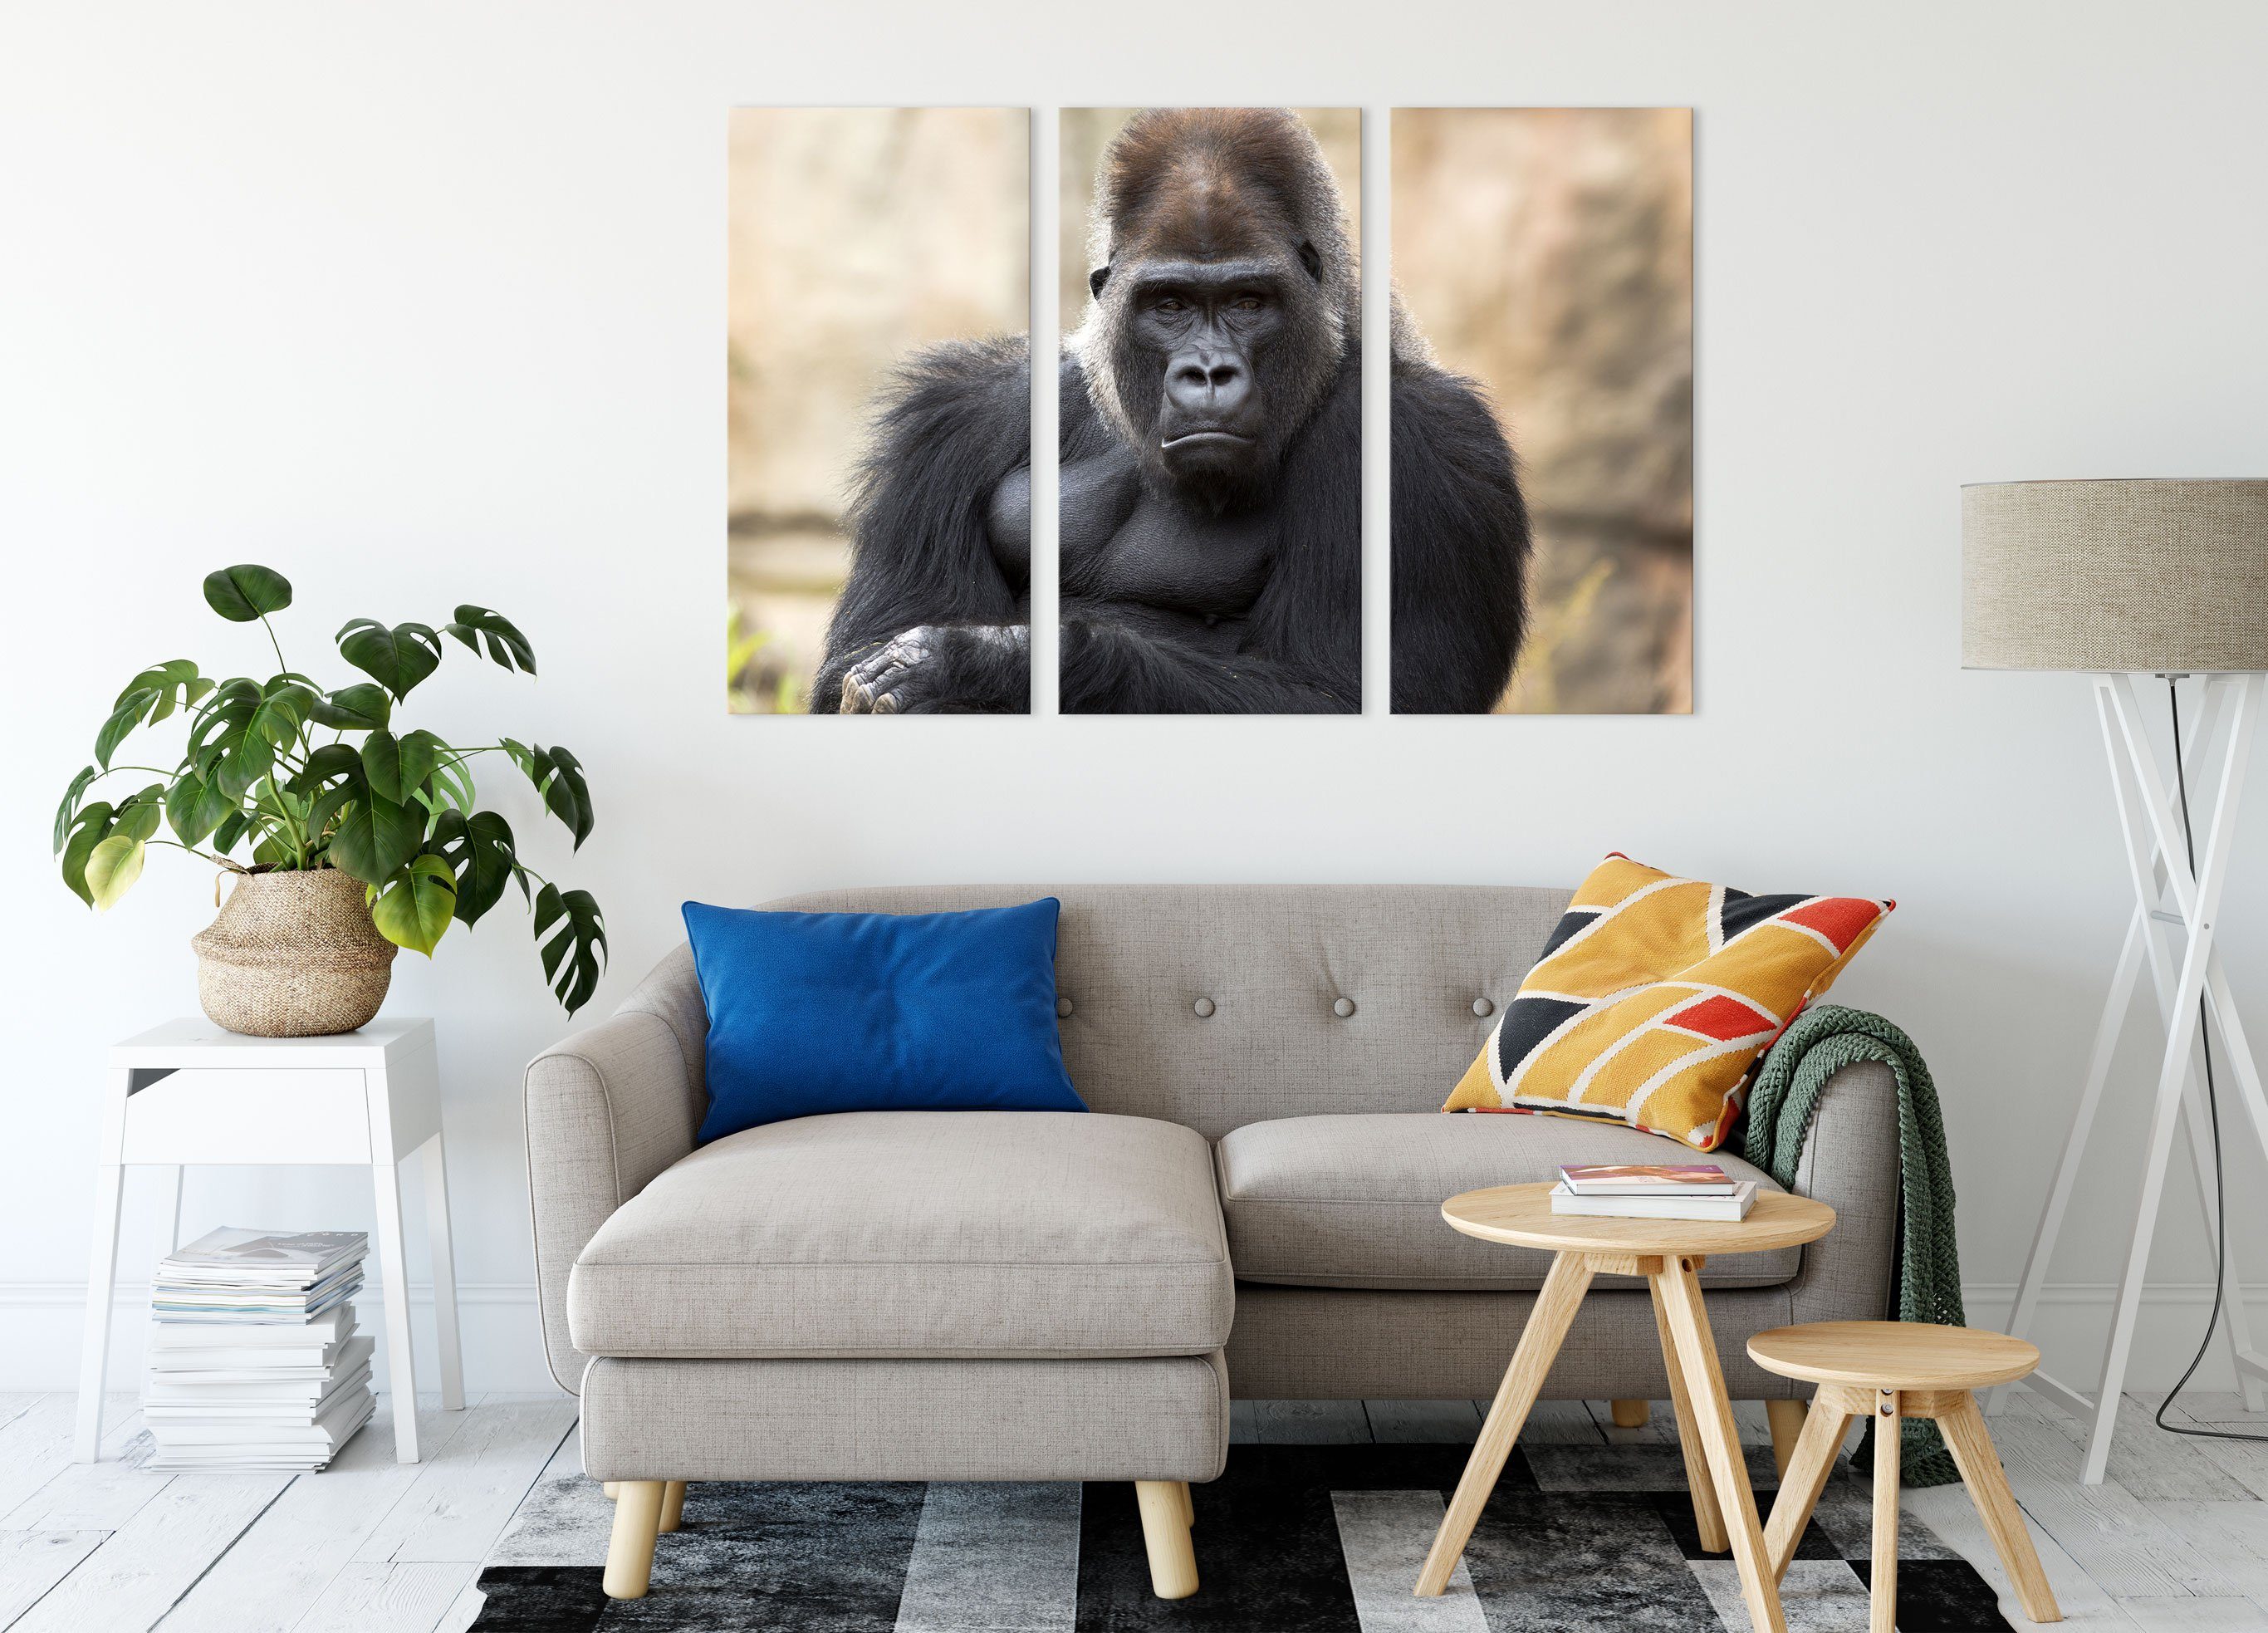 Pixxprint Leinwandbild inkl. Leinwandbild Gorilla, bespannt, (1 fertig gelangweilter Gorilla St), 3Teiler gelangweilter (120x80cm) Zackenaufhänger